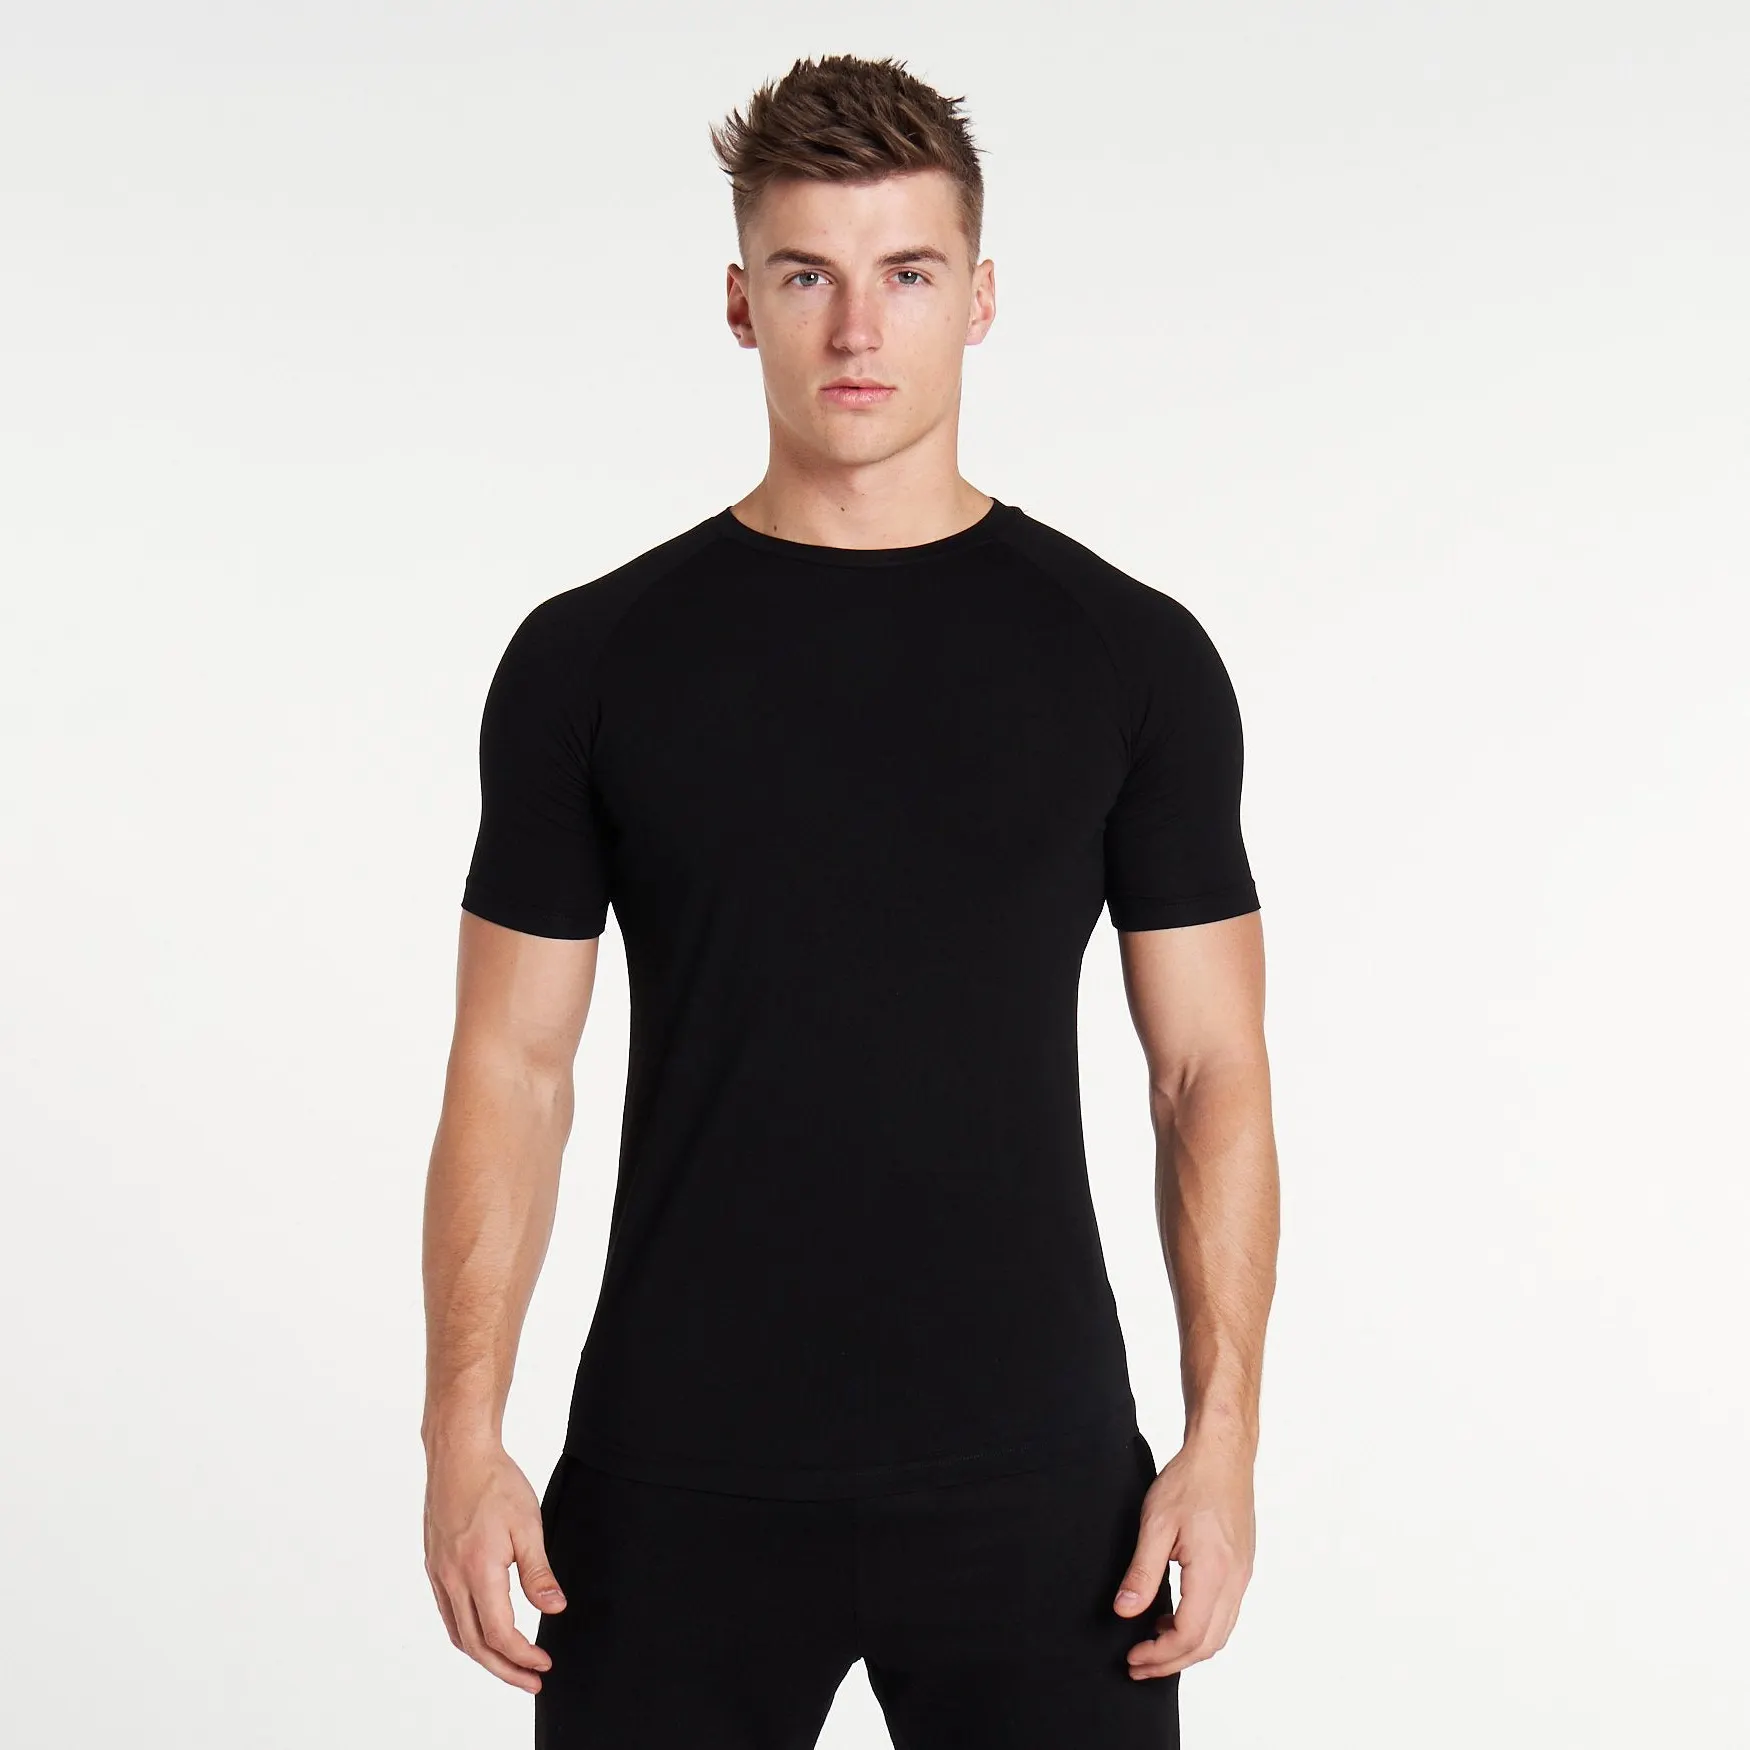 Camiseta de manga corta para hombre, Camiseta básica de algodón informal ligera de algodón supersuave, camiseta hecha a medida para hombre